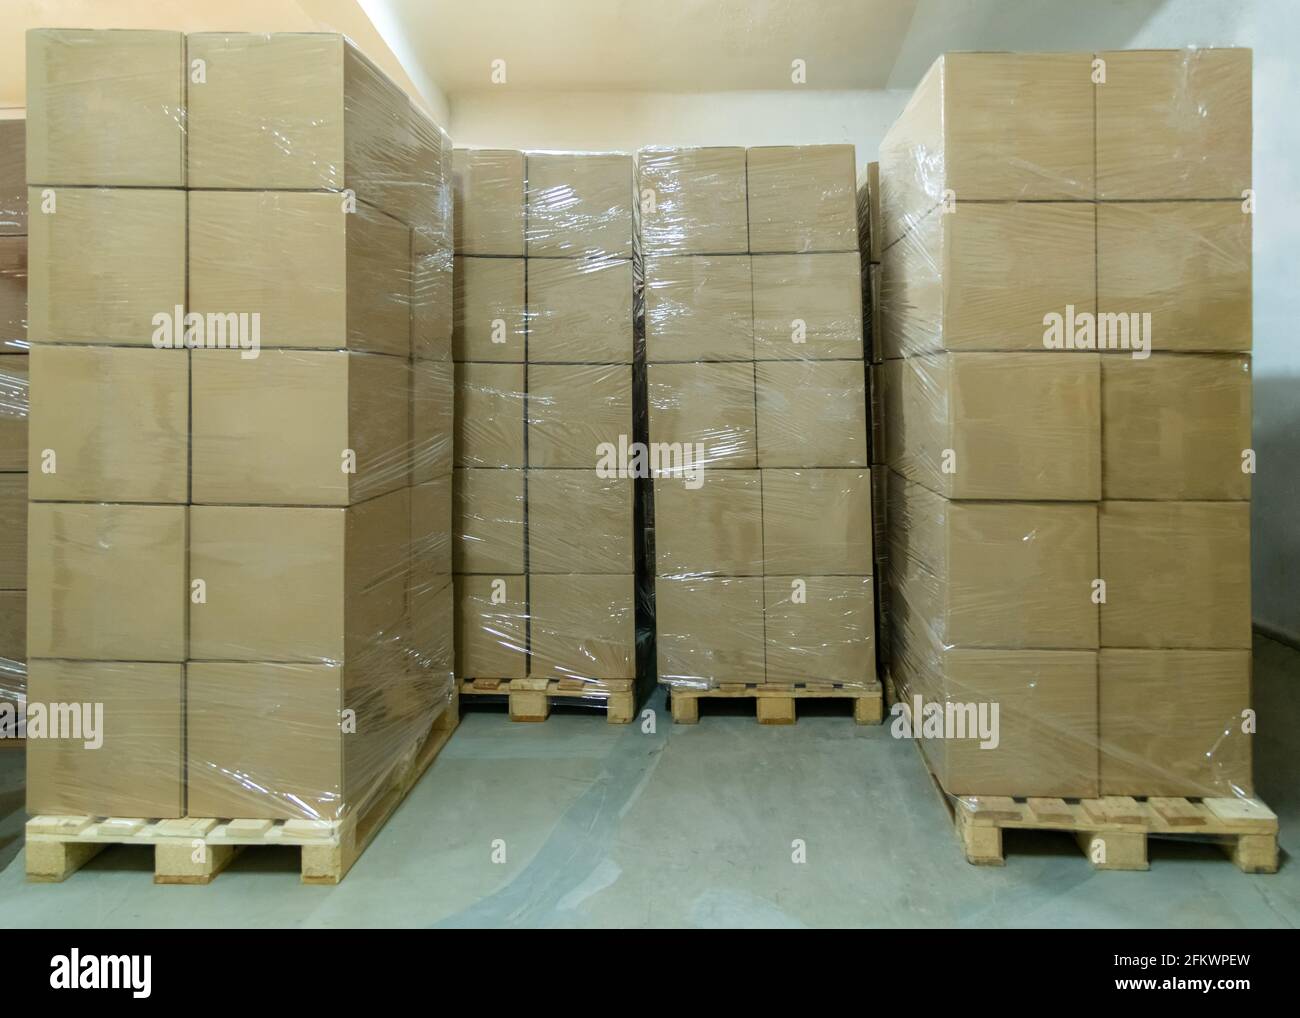 Pile de boîtes en carton prêtes à être expédiées d'un entrepôt. Espace de rangement des emballages. Banque D'Images